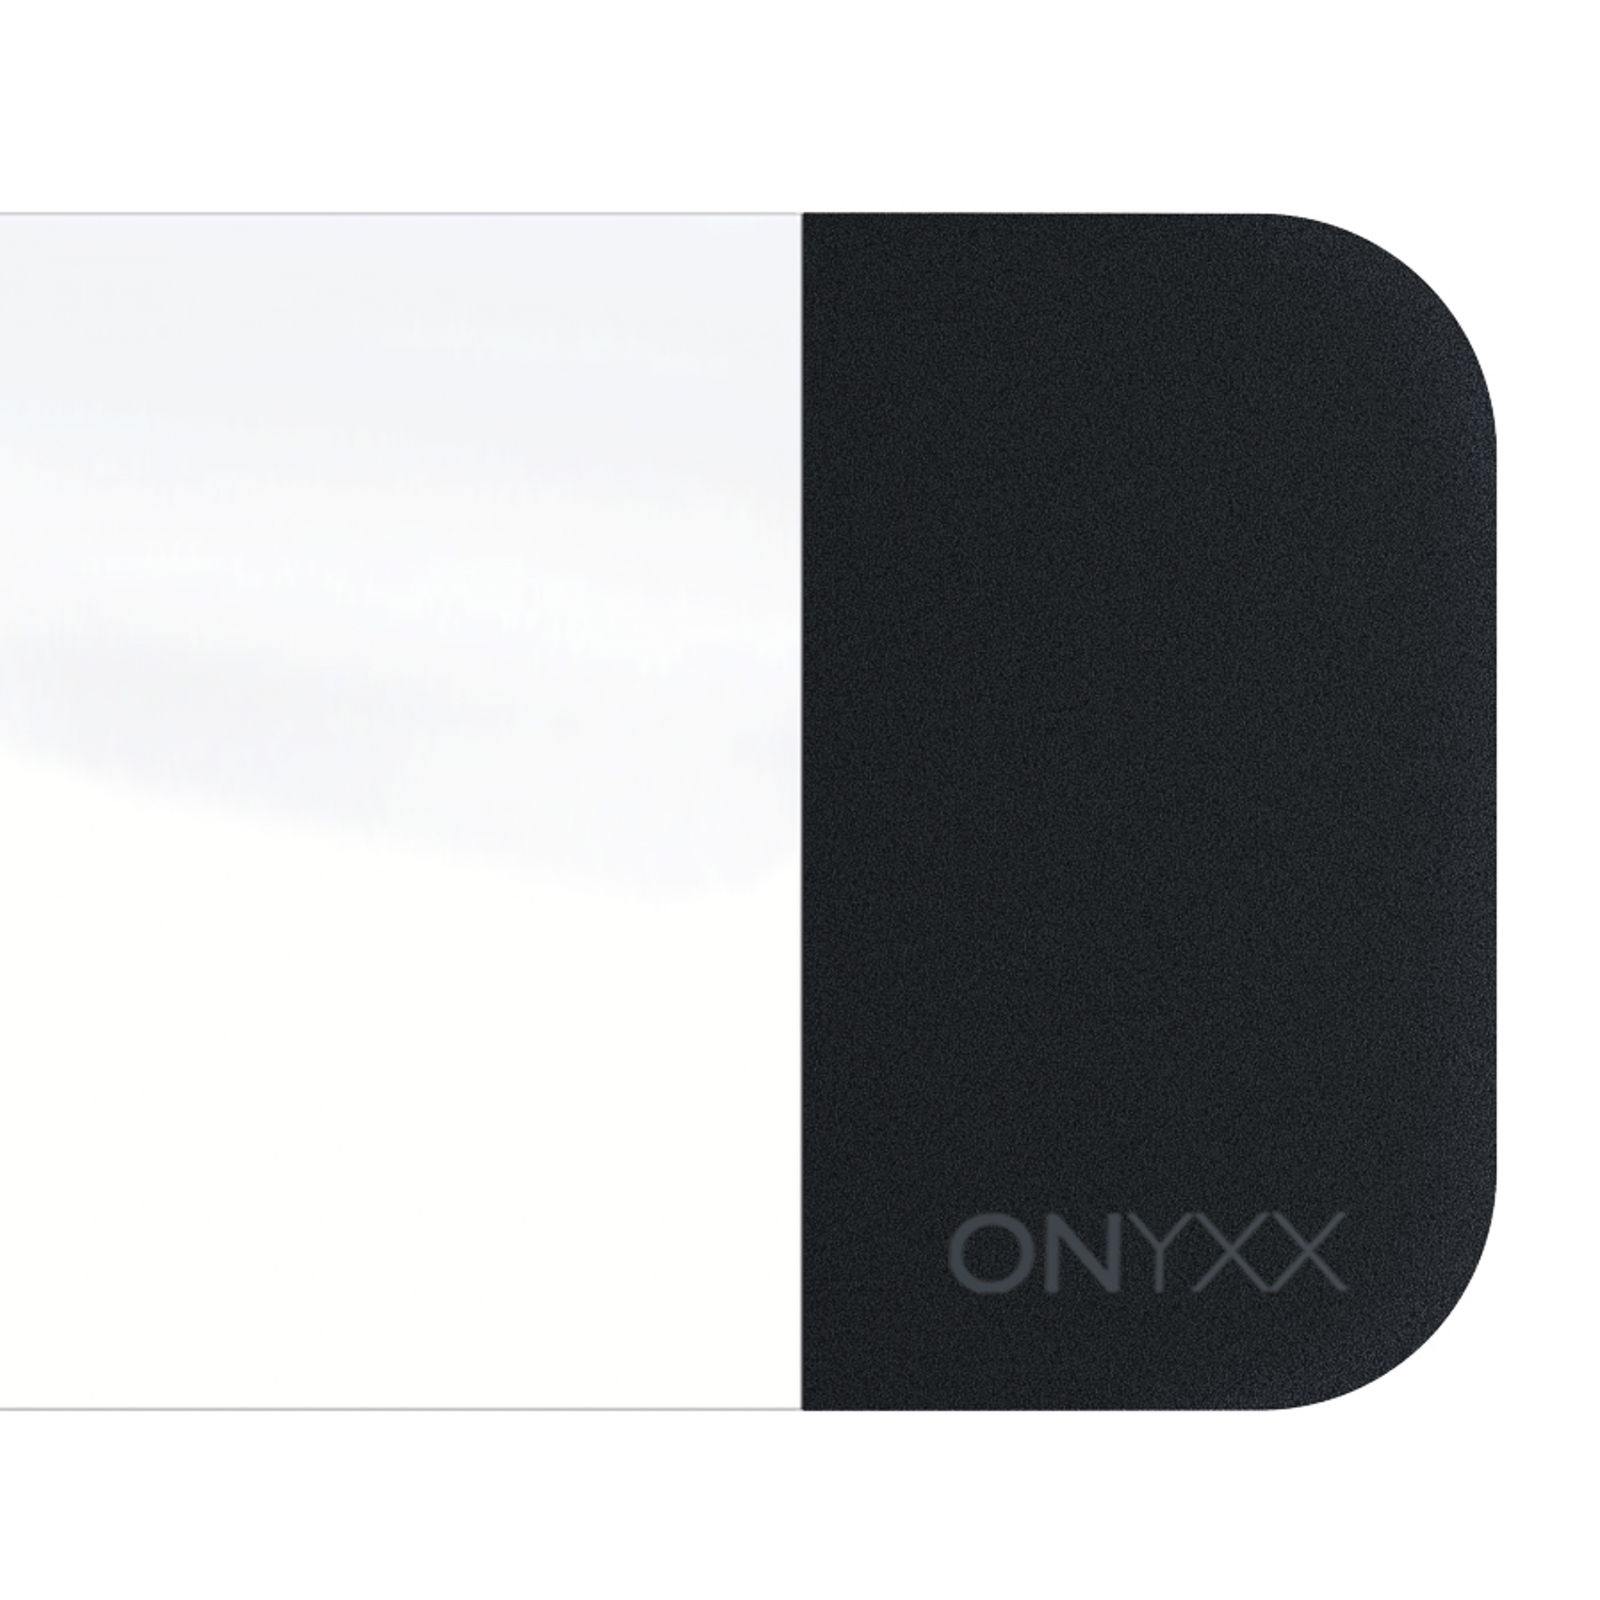 GRIMMEISEN Onyxx Linea Pro závěs bílá/černá